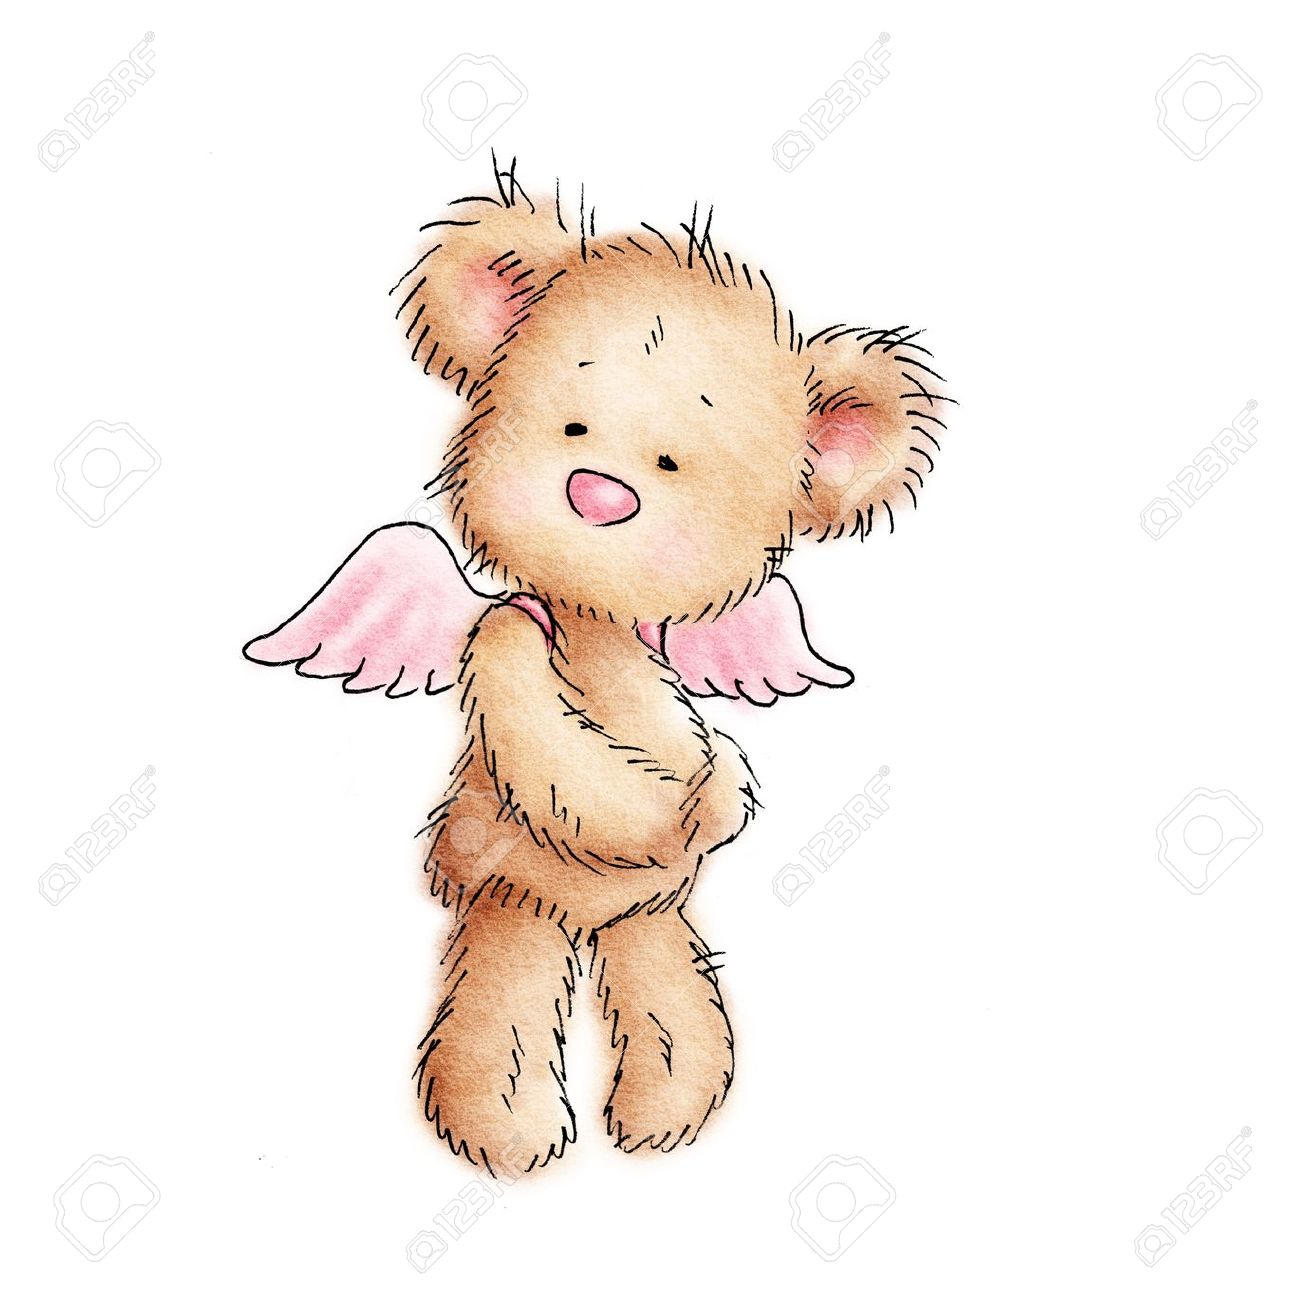 Angel teddy bear.